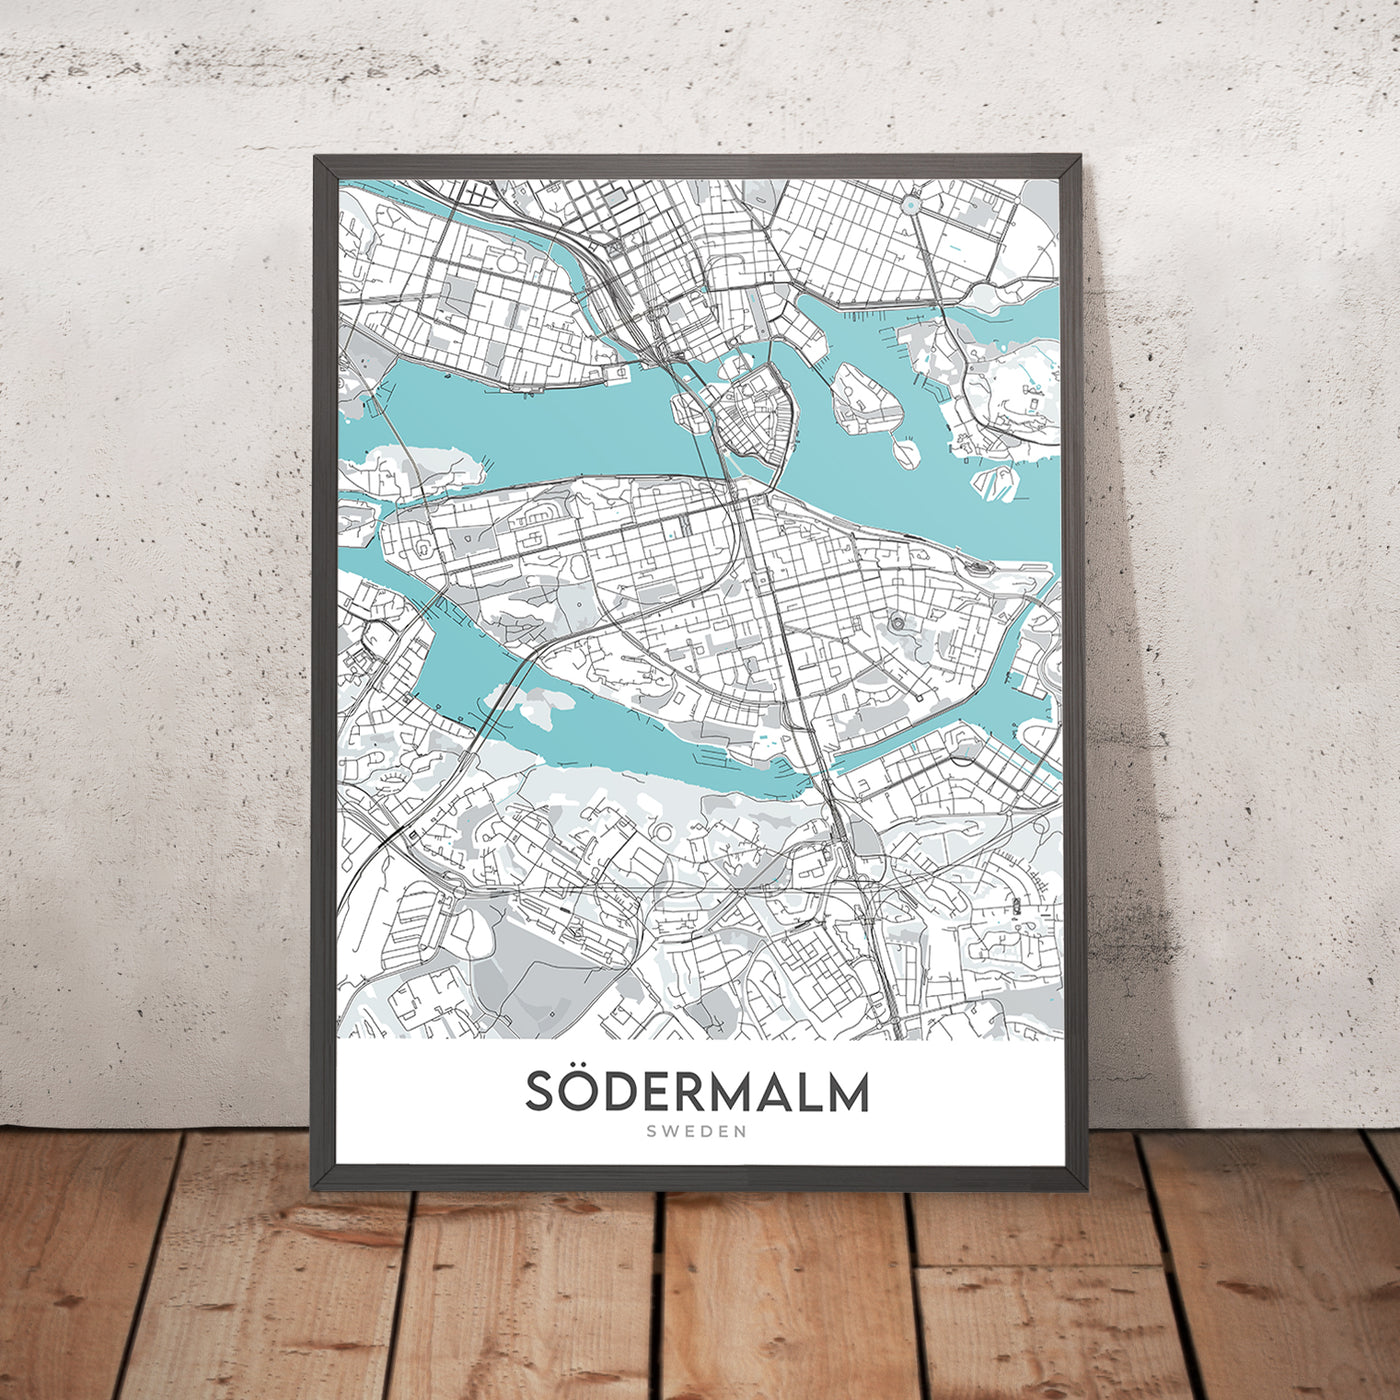 Modern City Map of Södermalm, Sweden: City Hall, Globe Arena, ABBA Museum, Djurgården, Skansen